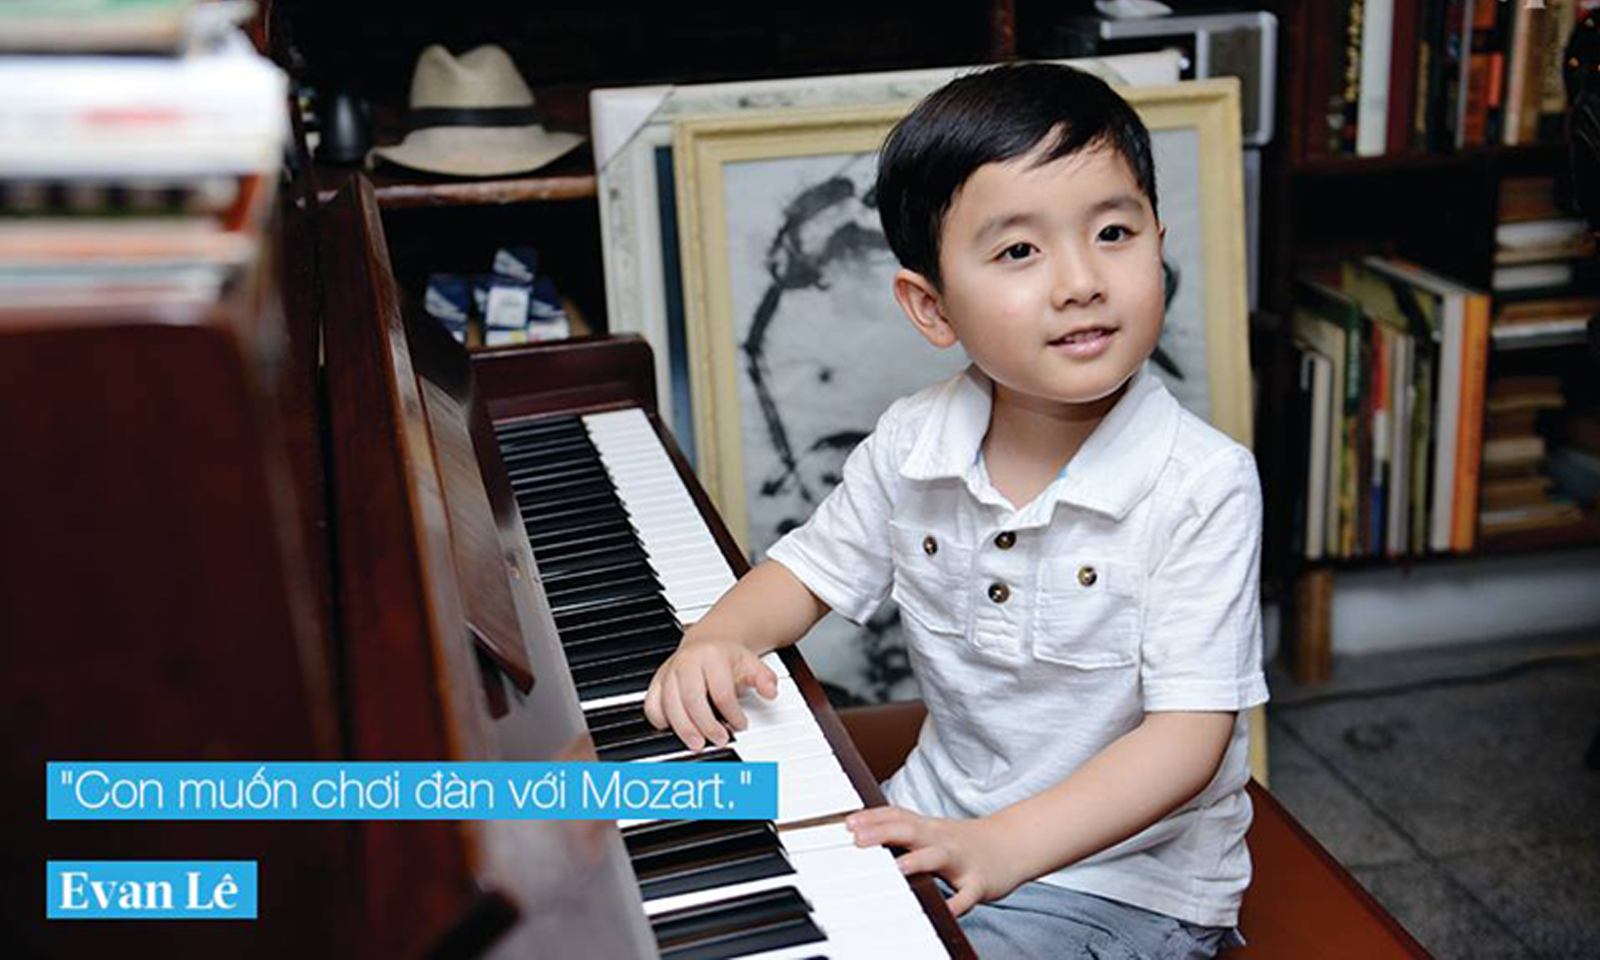 Thần đồng piano gốc Việt Evan Le: “Con muốn chơi đàn với Mozart”